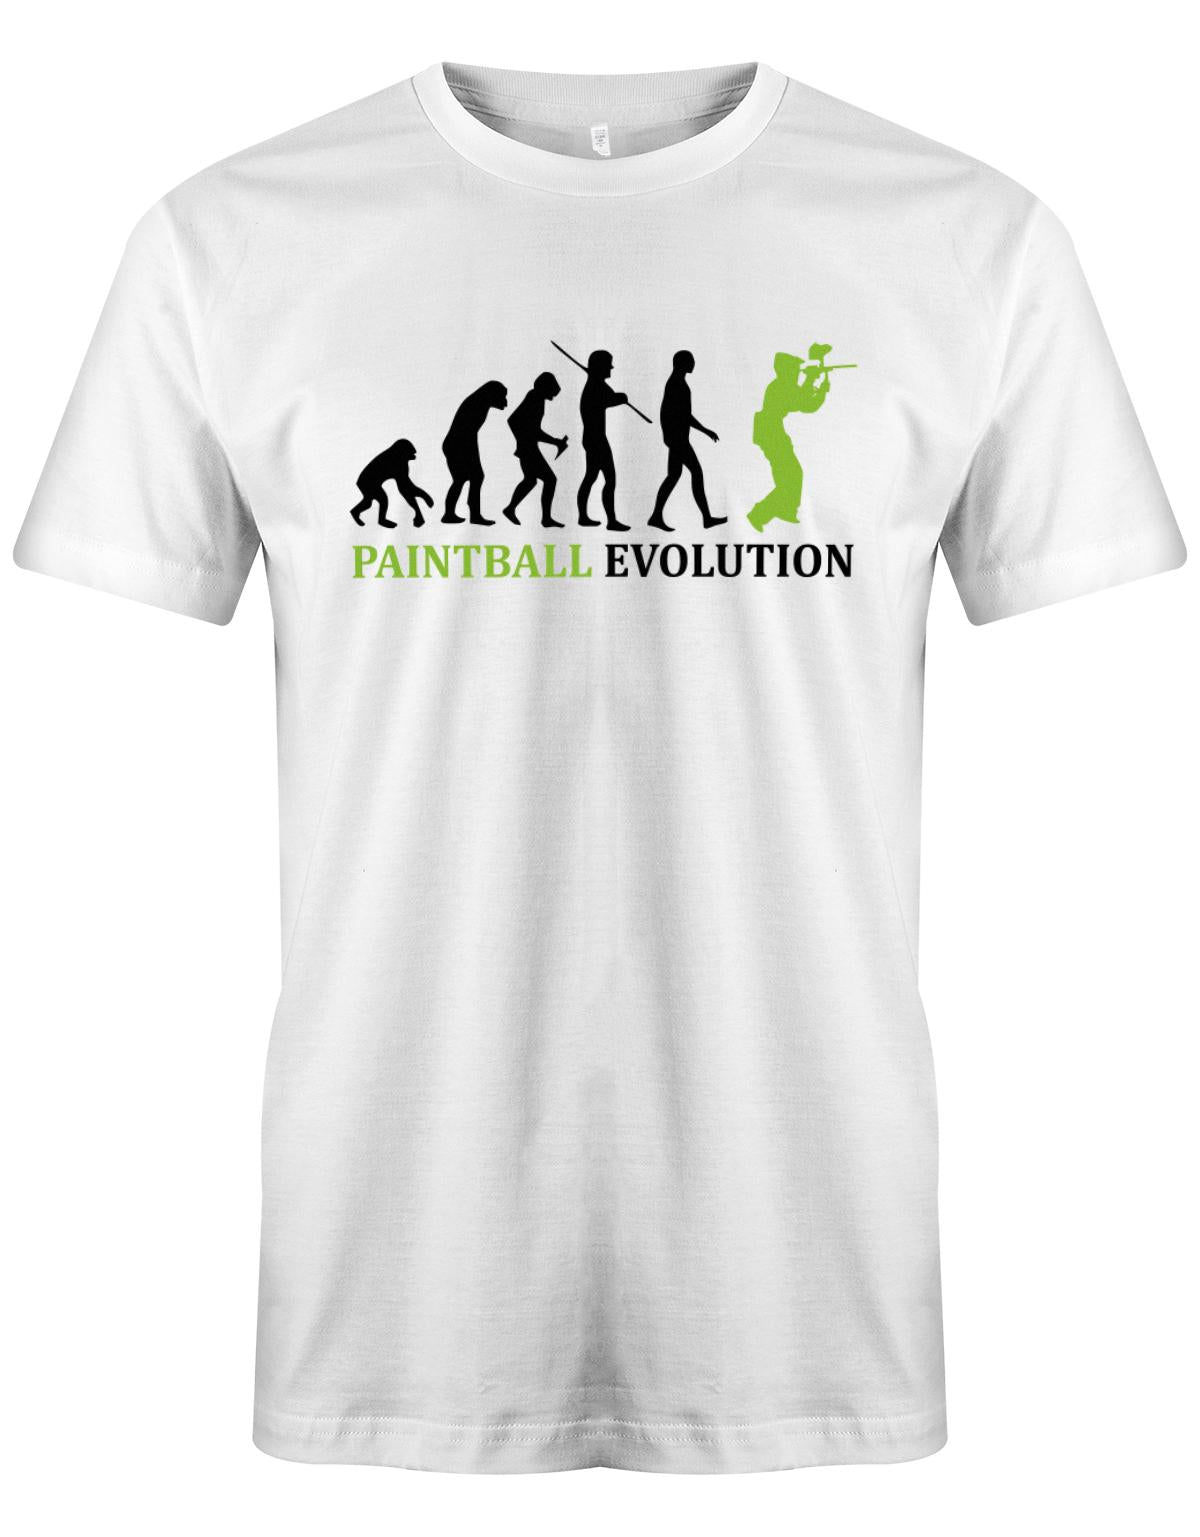 Paintball-Evolution-Herren-Shirt-Weiss